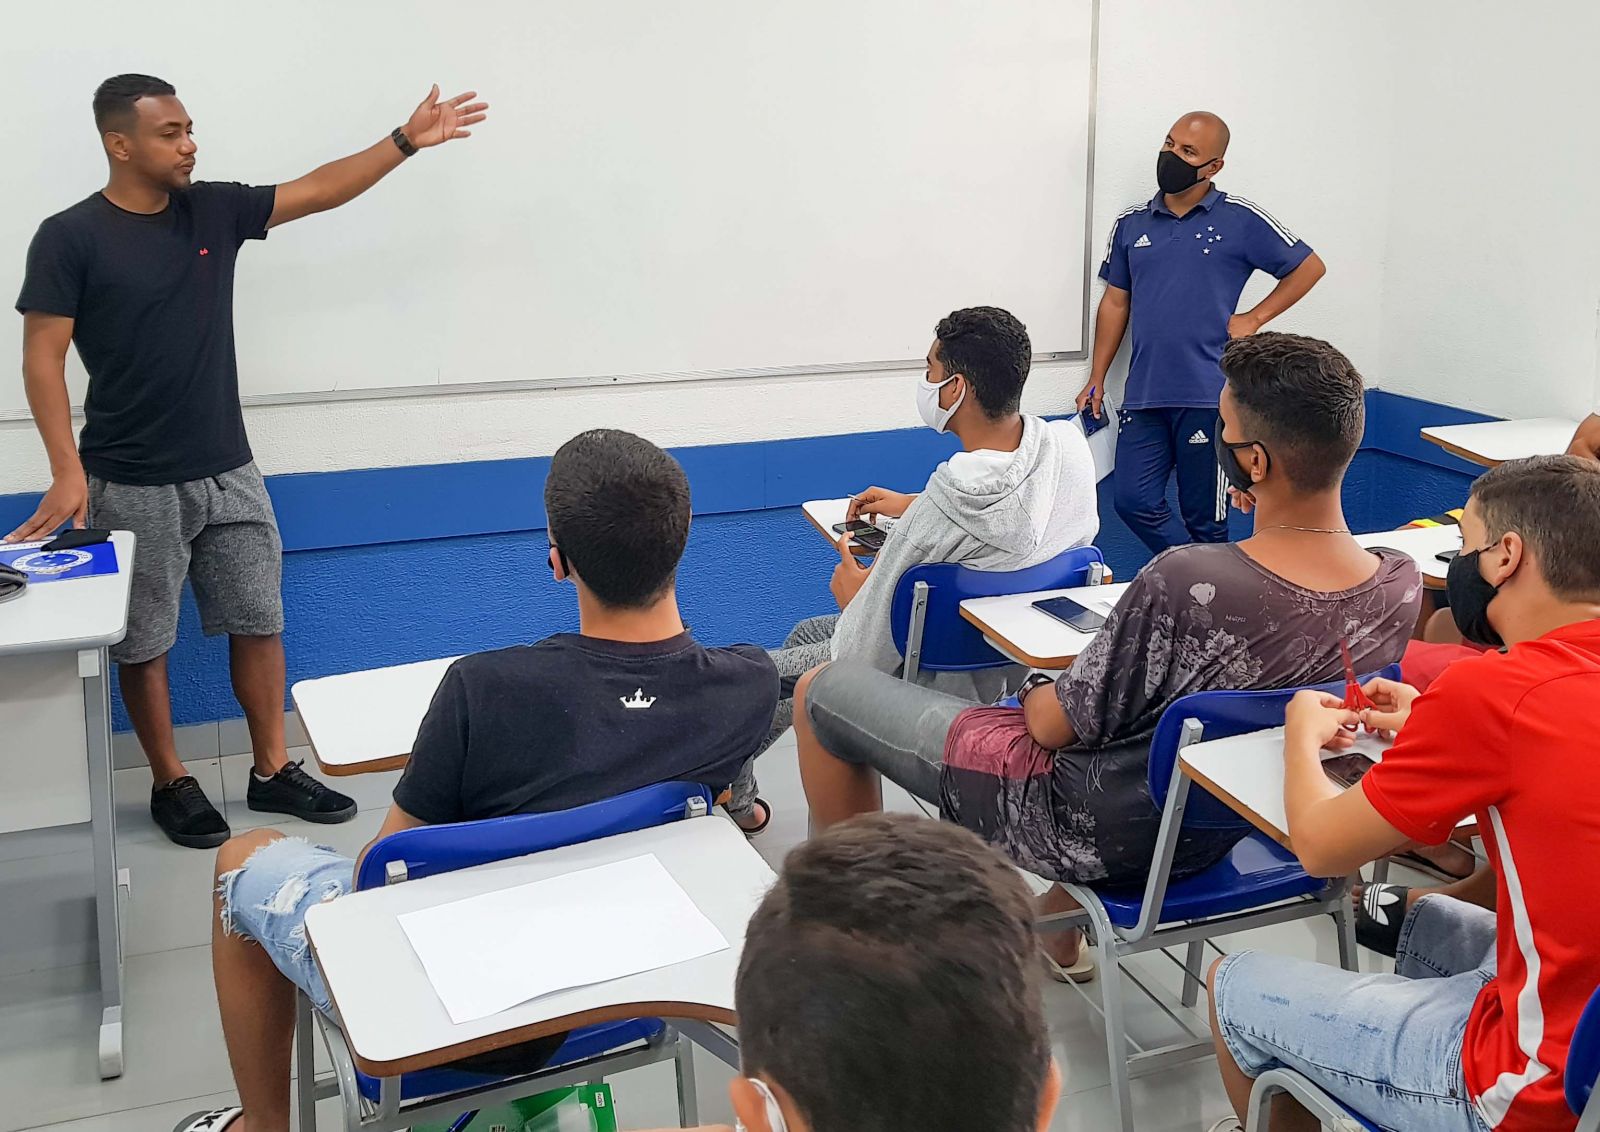 Campeão da Tríplice Coroa, Augusto Recife completa o ensino médio estudando no Cruzeiro